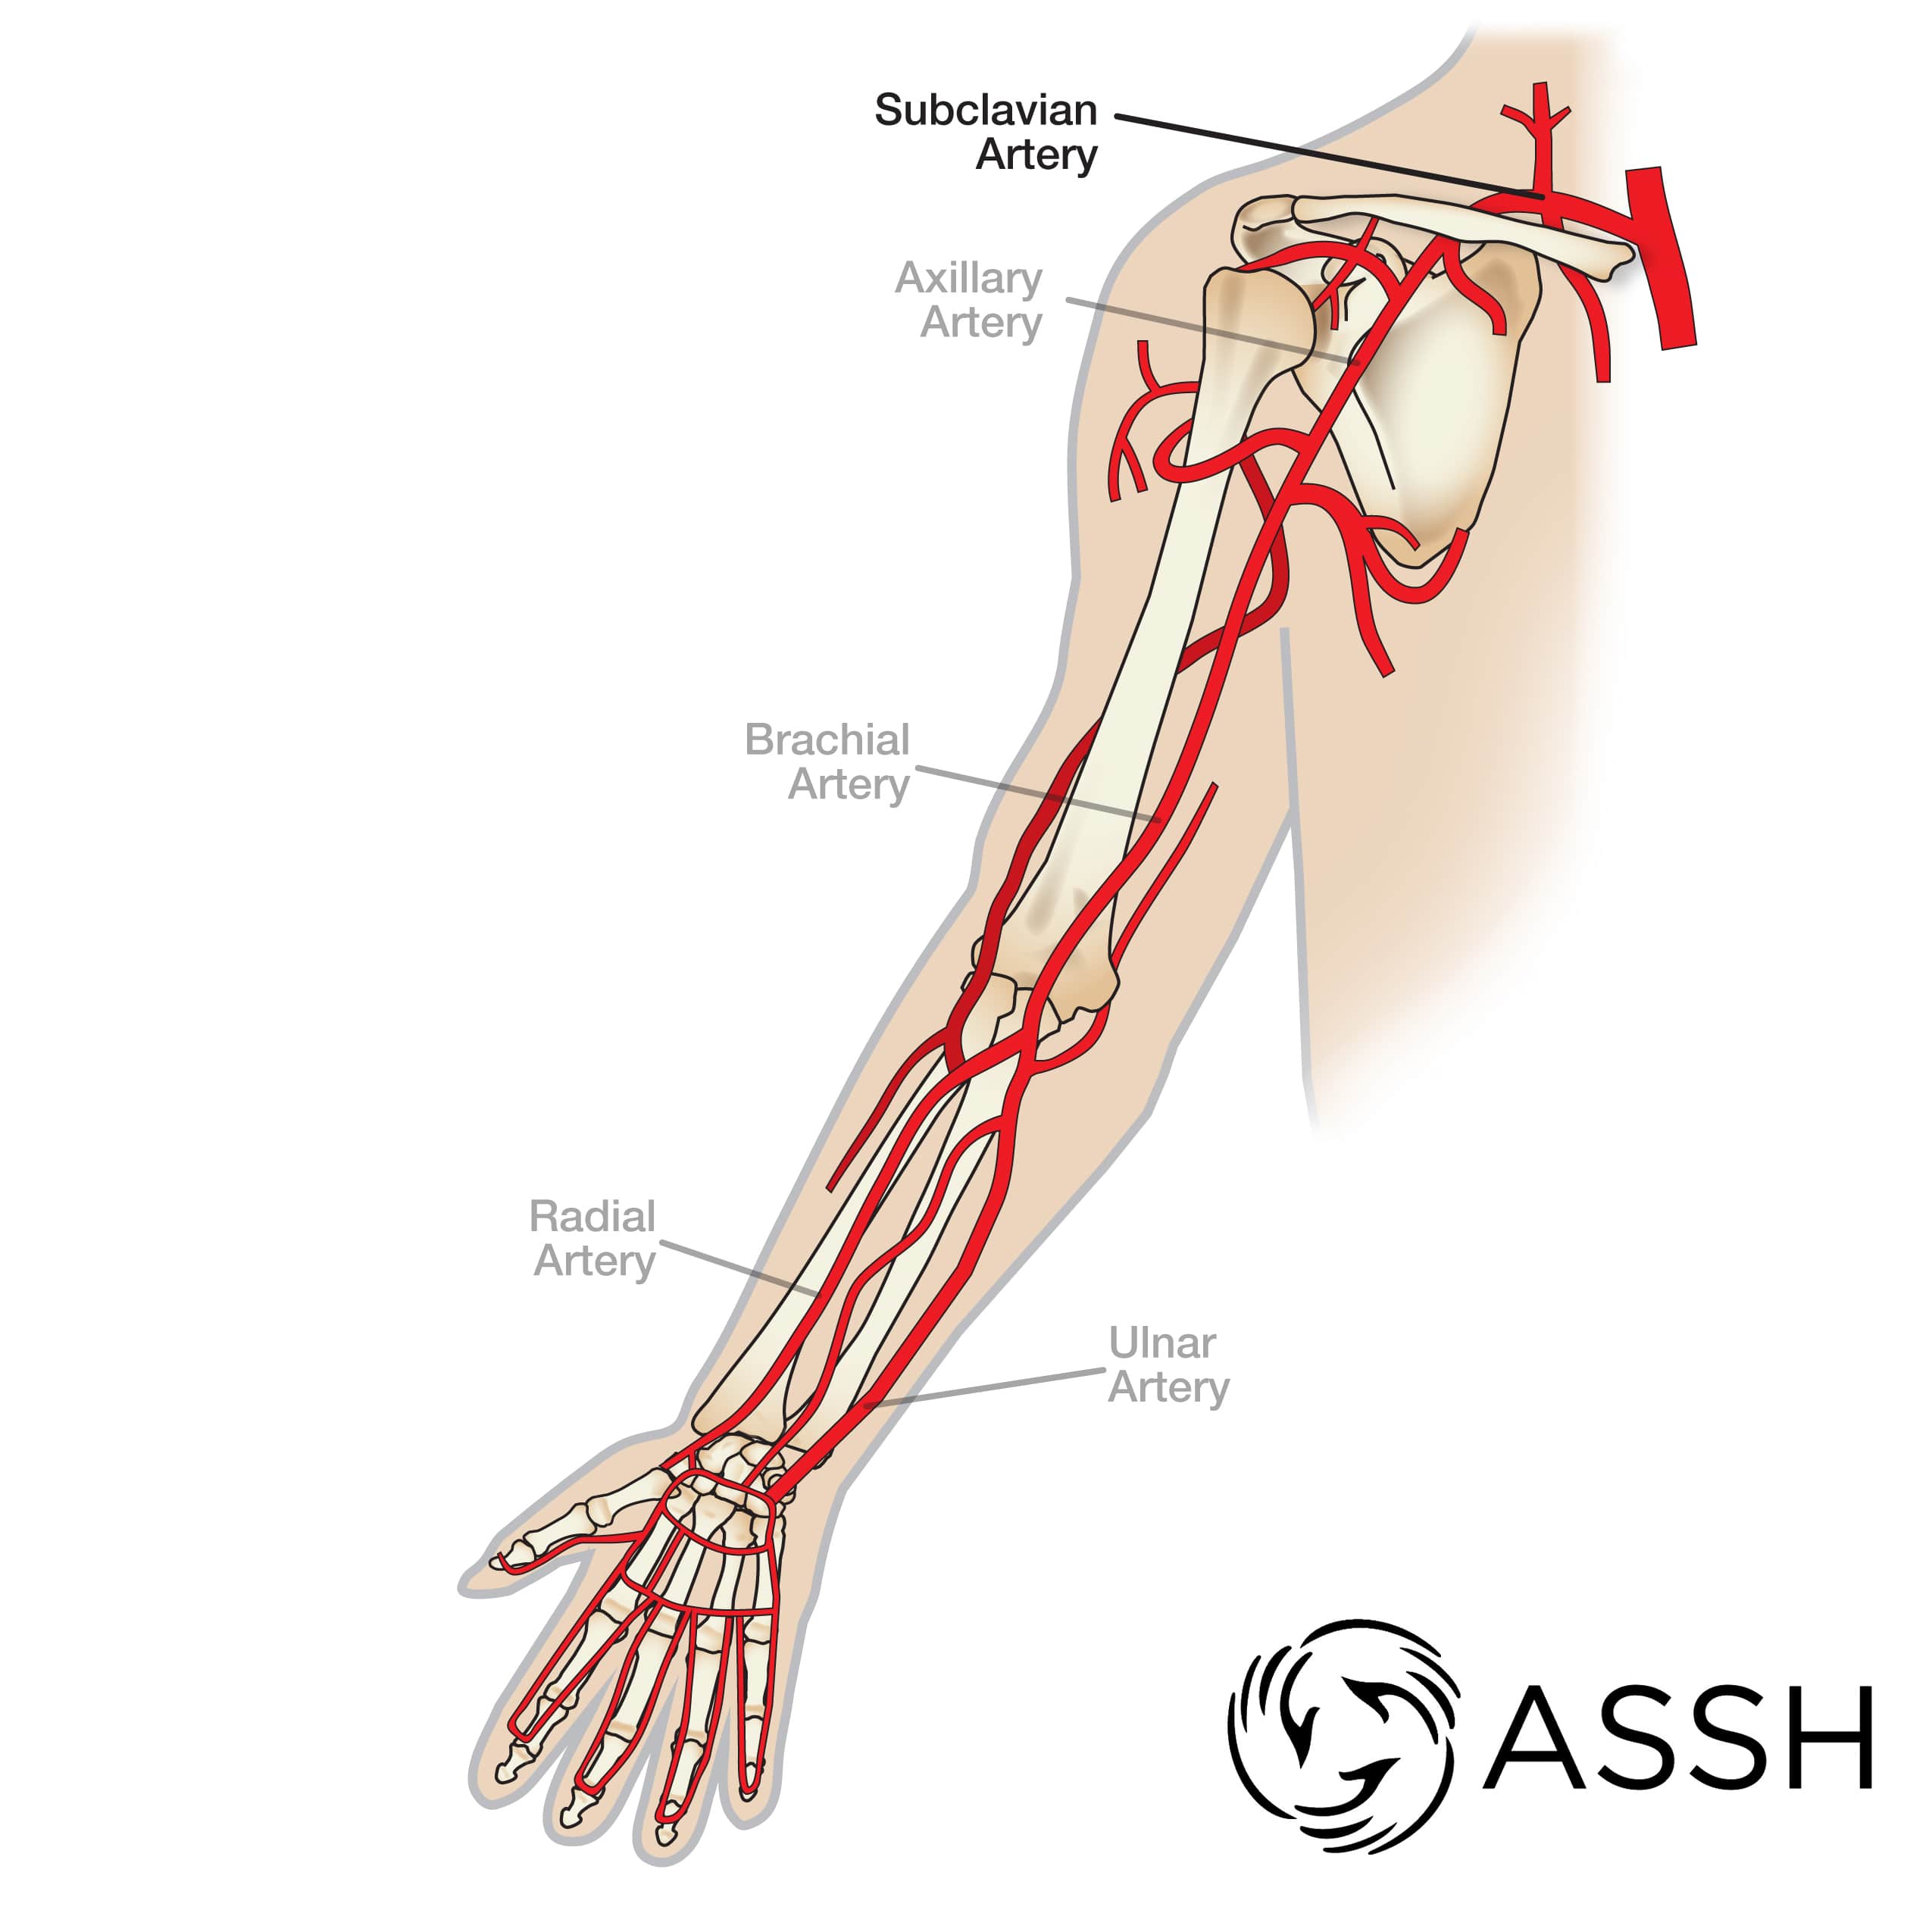 Artery axillary Axillary artery